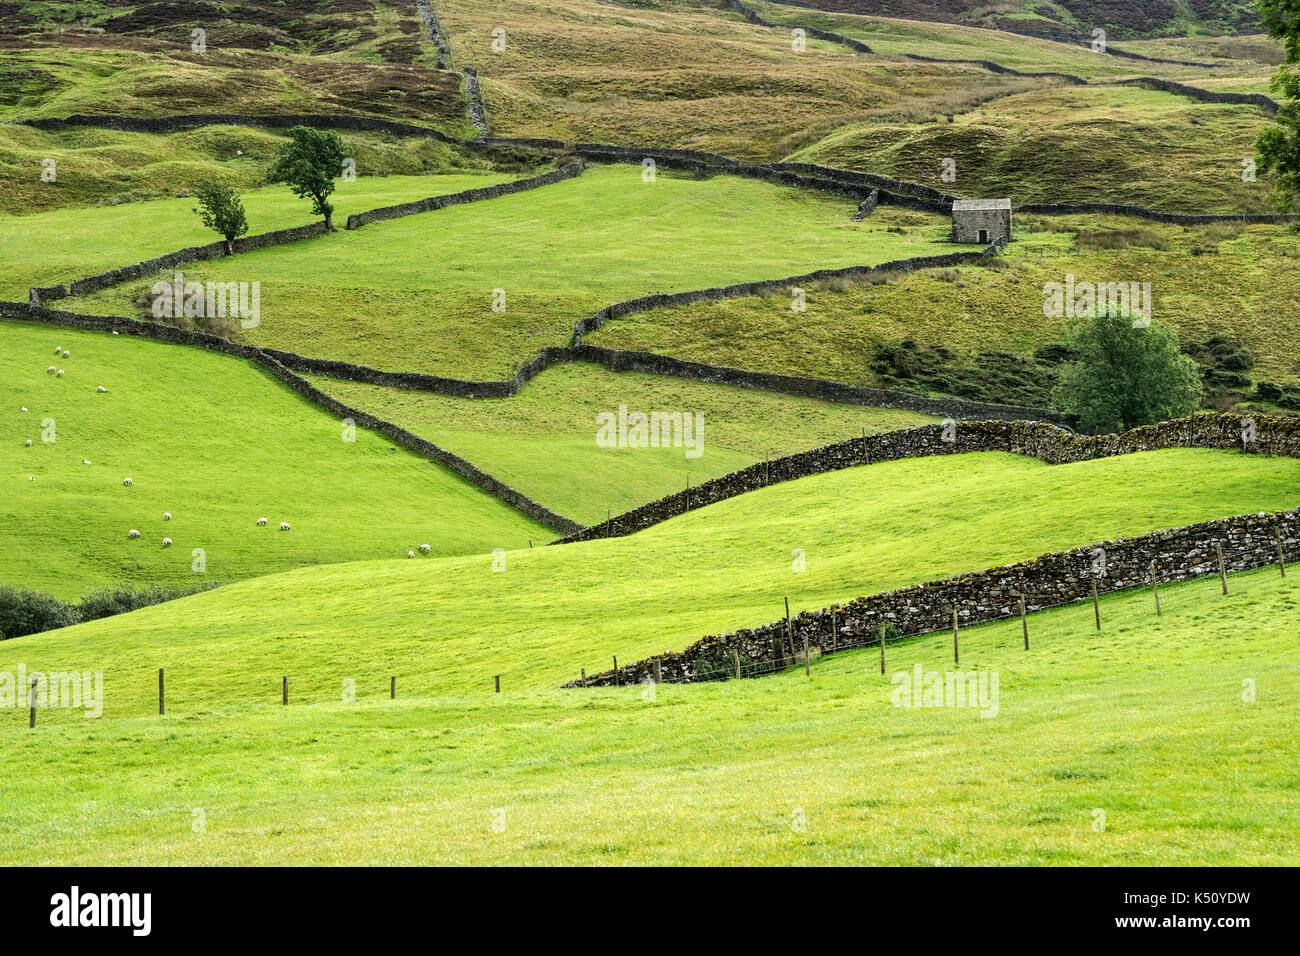 Un tradizionale Yorkshire Dales paesaggio agricolo di muri in pietra a secco, campi e fienile vicino Keld, Swaledale, Yorkshire Dales, REGNO UNITO Foto Stock